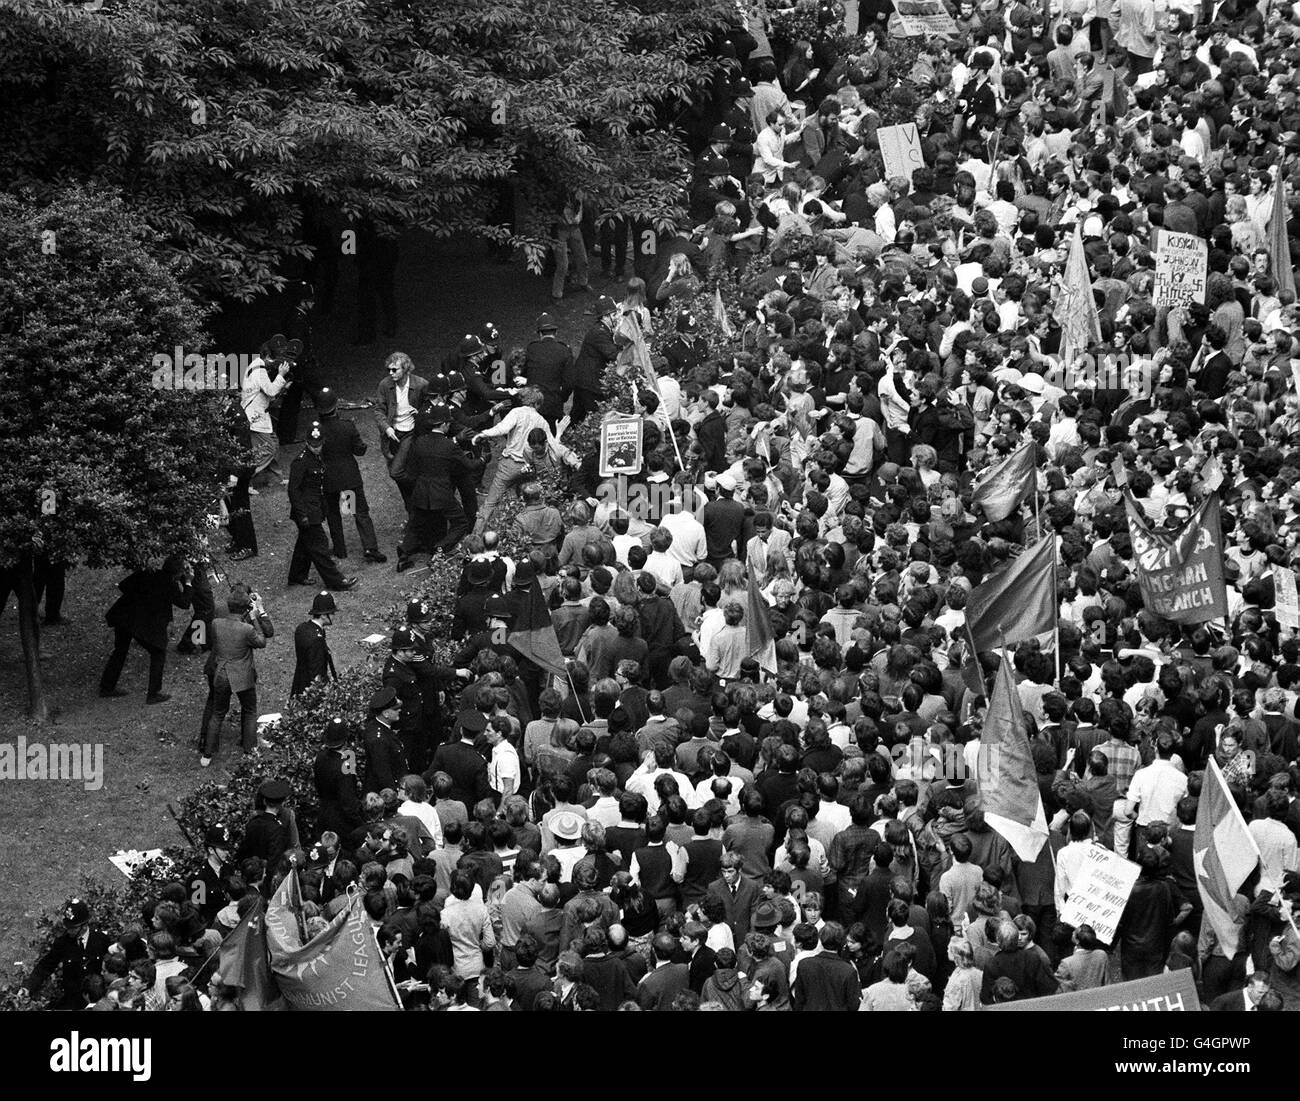 21/7/1968 perturbazioni in Grosvenor Square di Londra. Il primo ministro Harold Wilson è stato avvertito dal MI5 che gli agitatori comunisti stavano progettando di infiltrarsi nella marcia annuale del CND Aldermaston dopo i disordini di Grosvenor Square nel 1968, secondo i documenti ufficiali pubblicati oggi. I documenti messi a disposizione per la prima volta presso l'Ufficio dei pubblici registri sotto la regola di 30 anni mostrano i profondi timori scatenati all'interno dell'istituzione dalle violente proteste della guerra anti-Vietnam che marciano in piazza Grosvenor. Vedi i RECORD di storia di PA a marzo Foto Stock